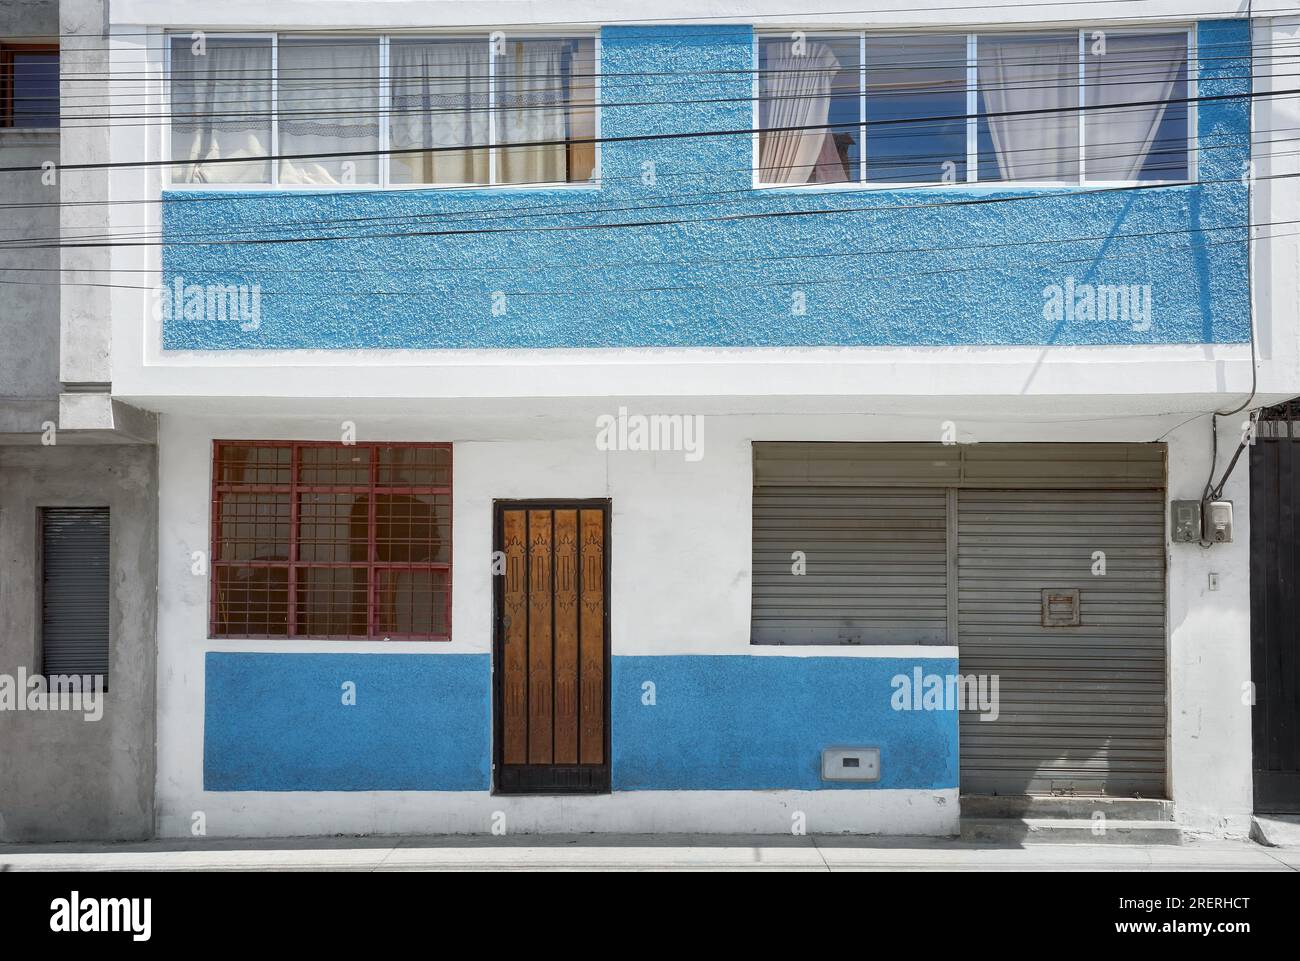 Vue sur la rue d'une façade de bâtiment ancien, arrière-plan architectural, Riobamba, Équateur. Banque D'Images